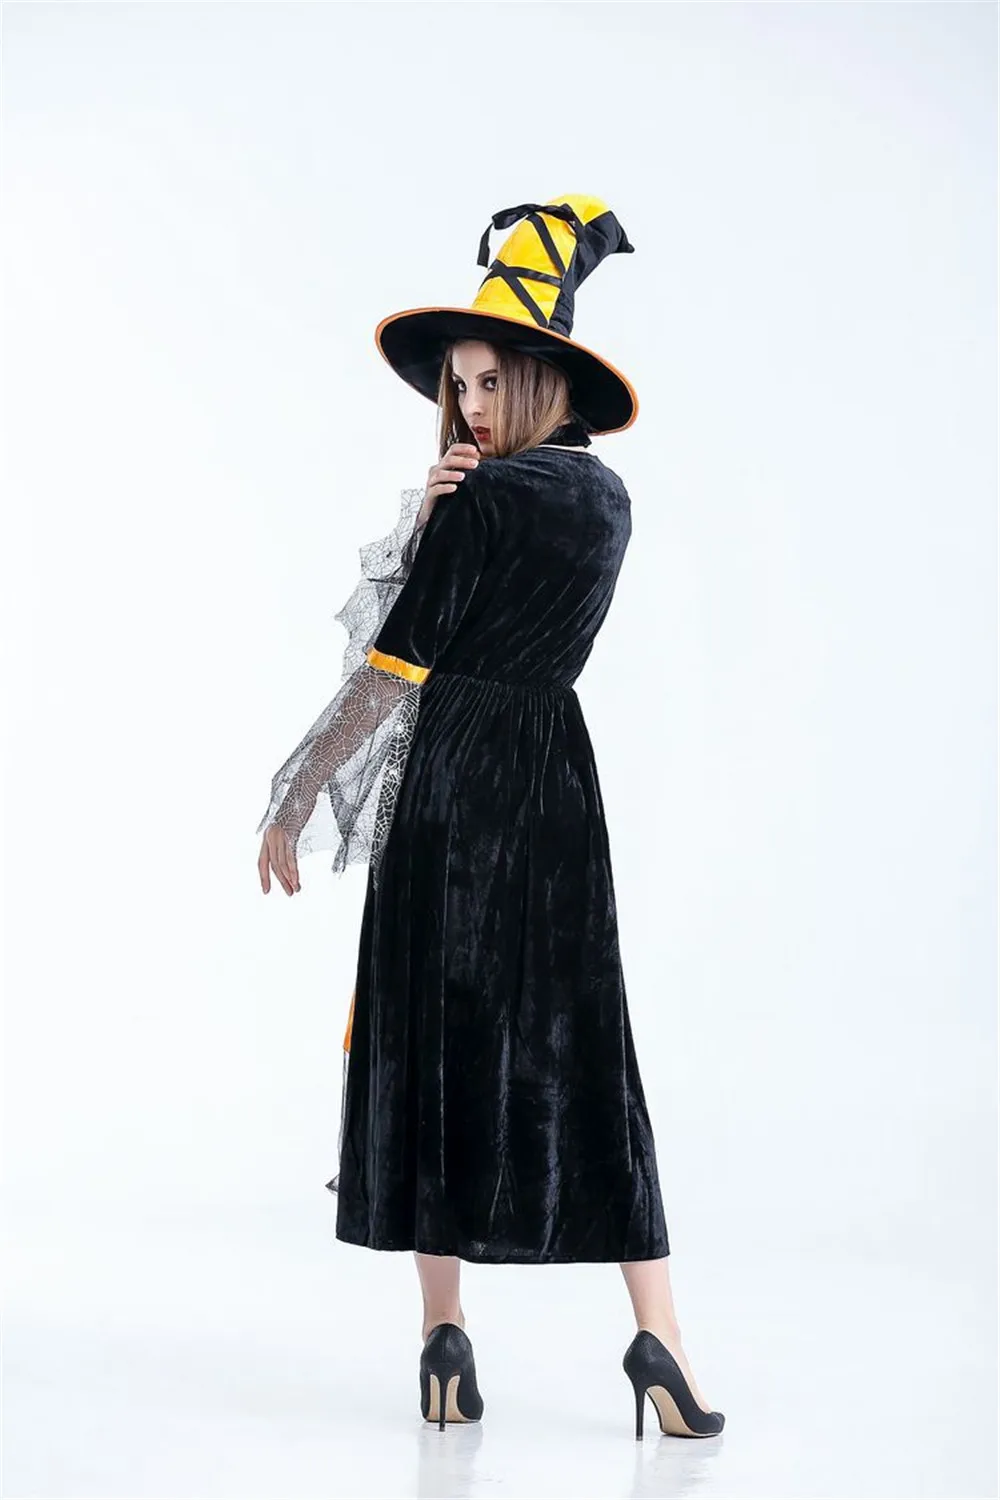 Хэллоуин Карнавал Пурим фестиваль ужасов ведьмы косплей вампира призрак королева сценический пакет ночной клуб тема костюм нарядное